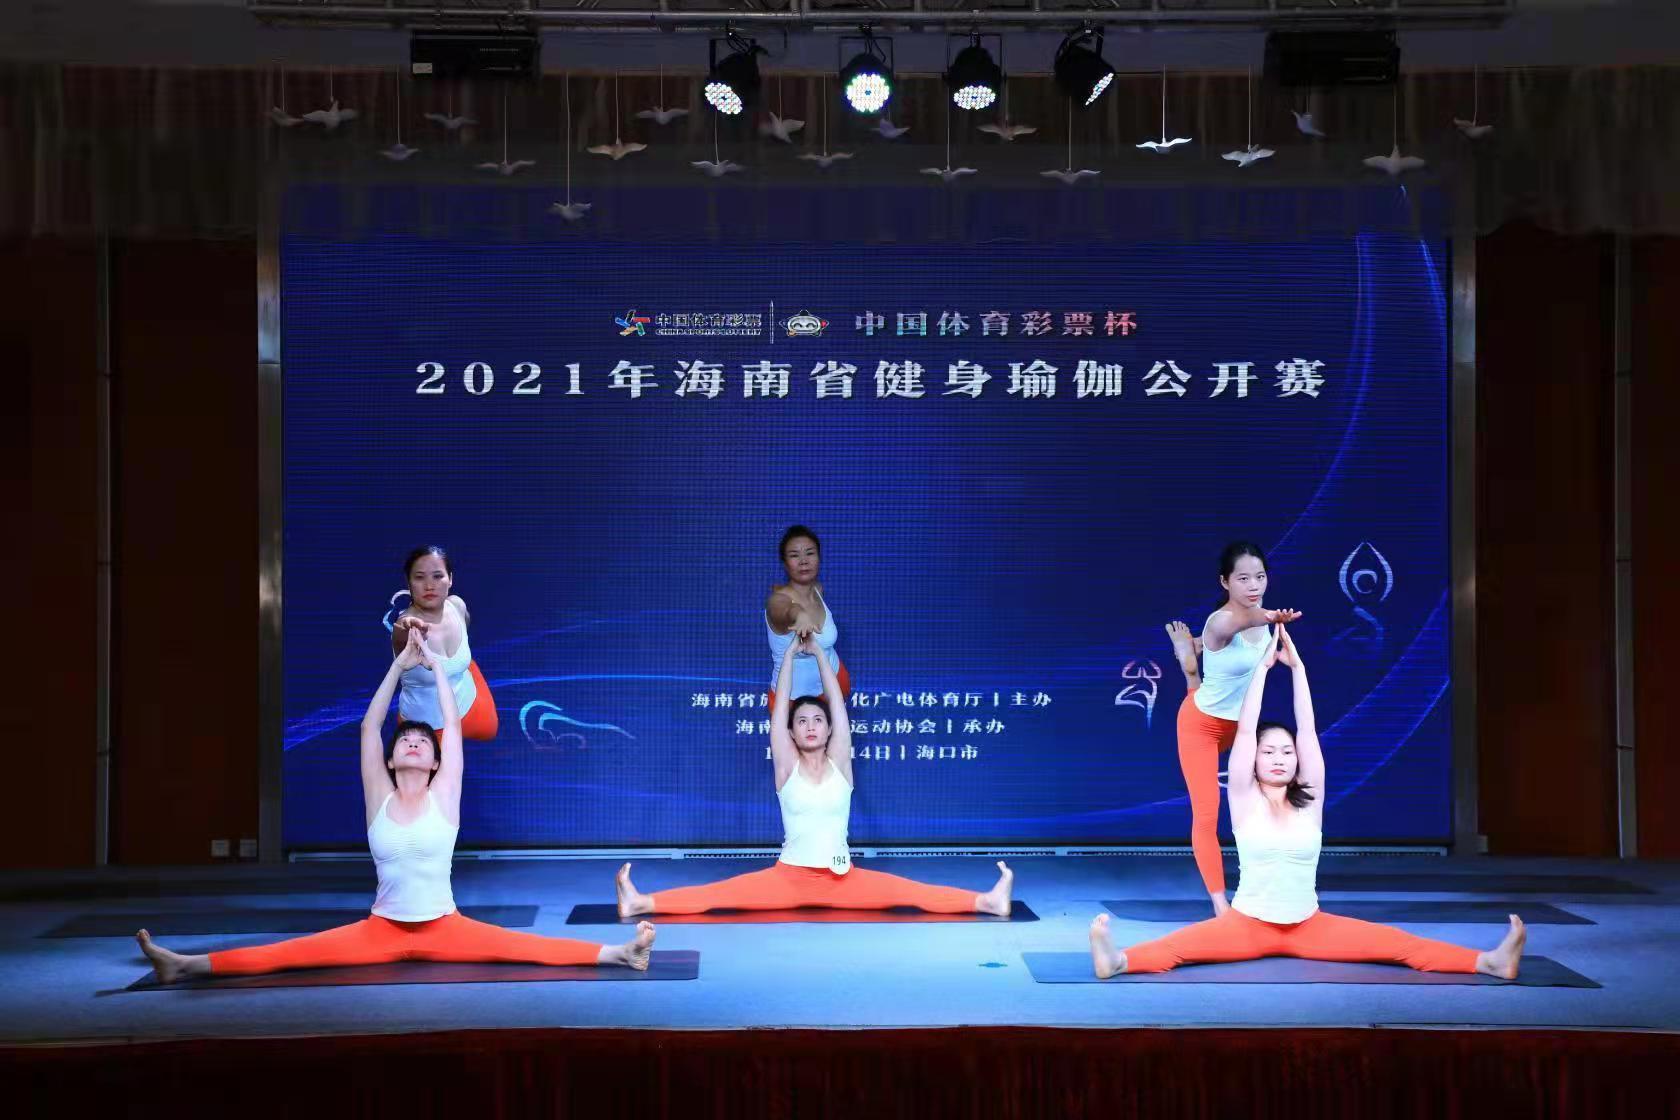 本次比赛由海南省旅游和文化广电体育厅主办,海南省瑜伽运动协会承办